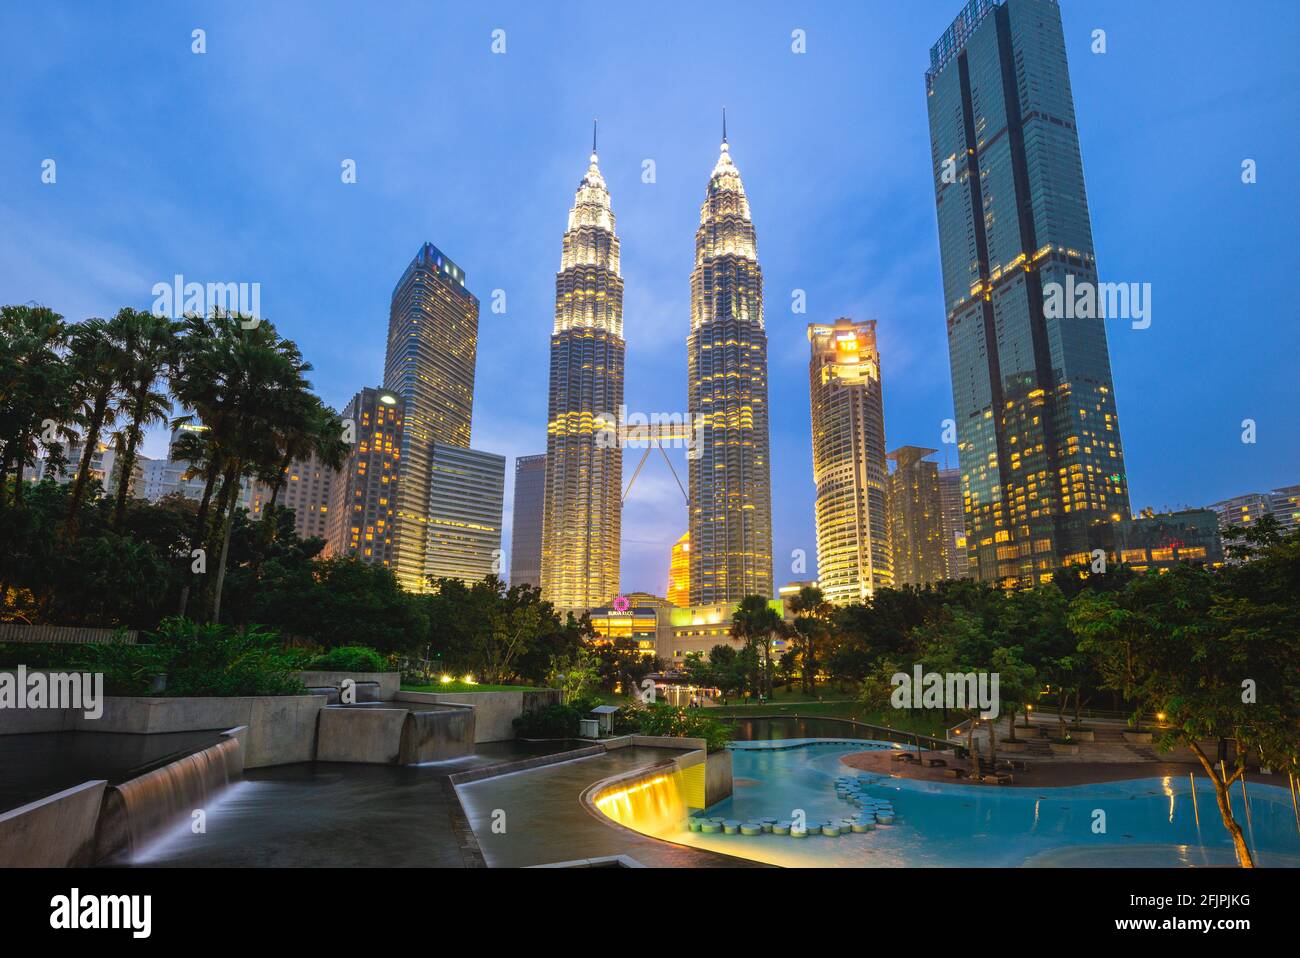 20 août 2018 : tours jumelles petronas, les plus hauts bâtiments de Kuala Lumpur, malaisie et les plus hautes tours jumelles du monde. Début de la construction Banque D'Images